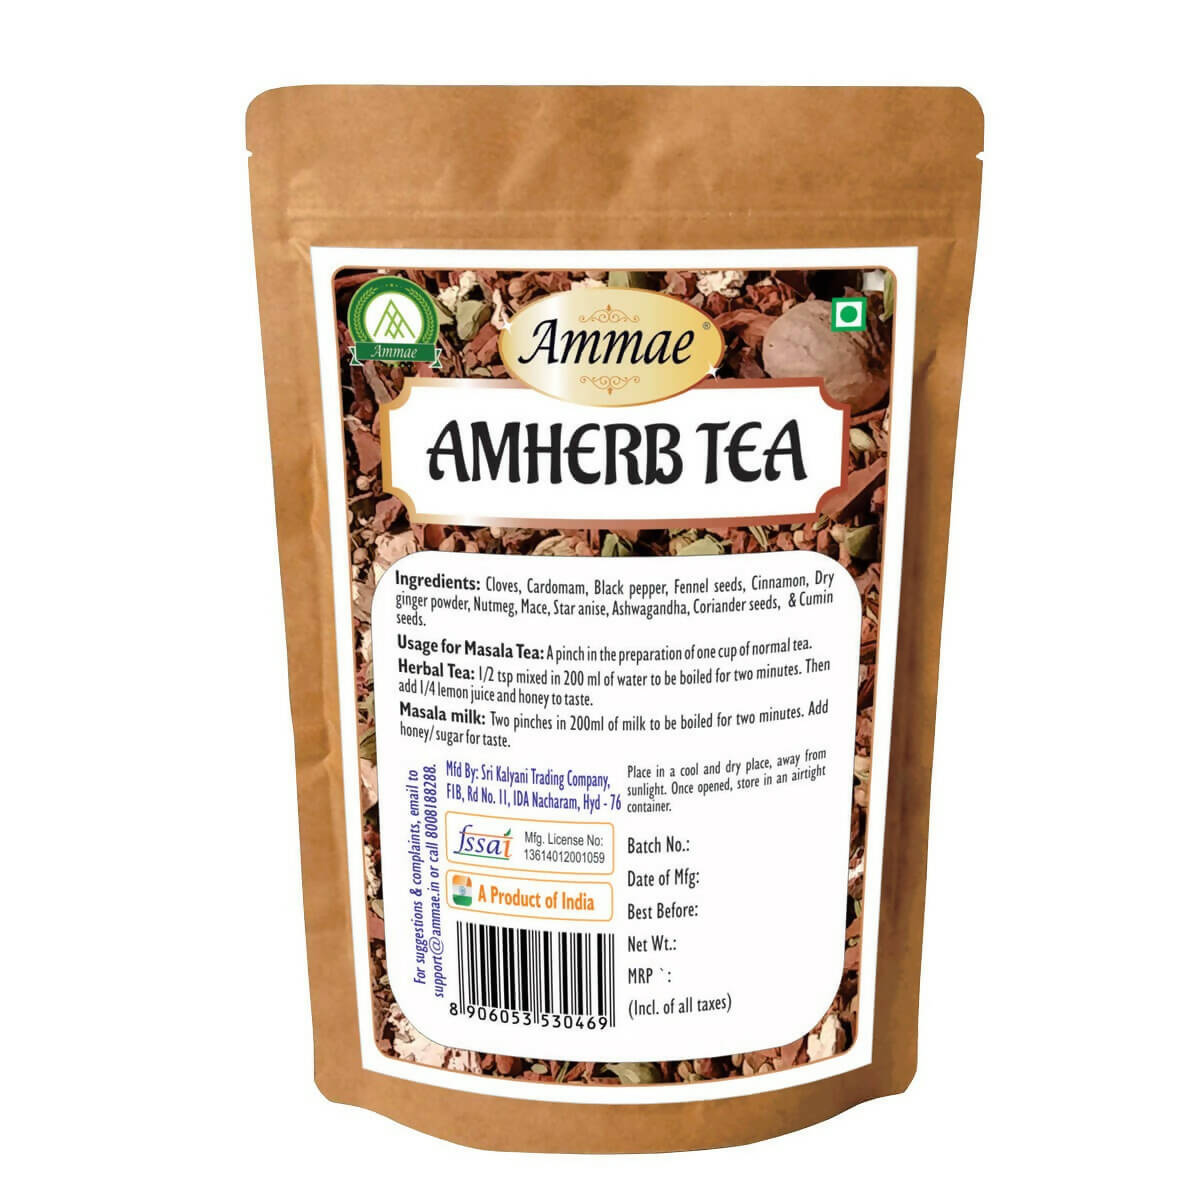 Ammae Amherb Tea - Distacart